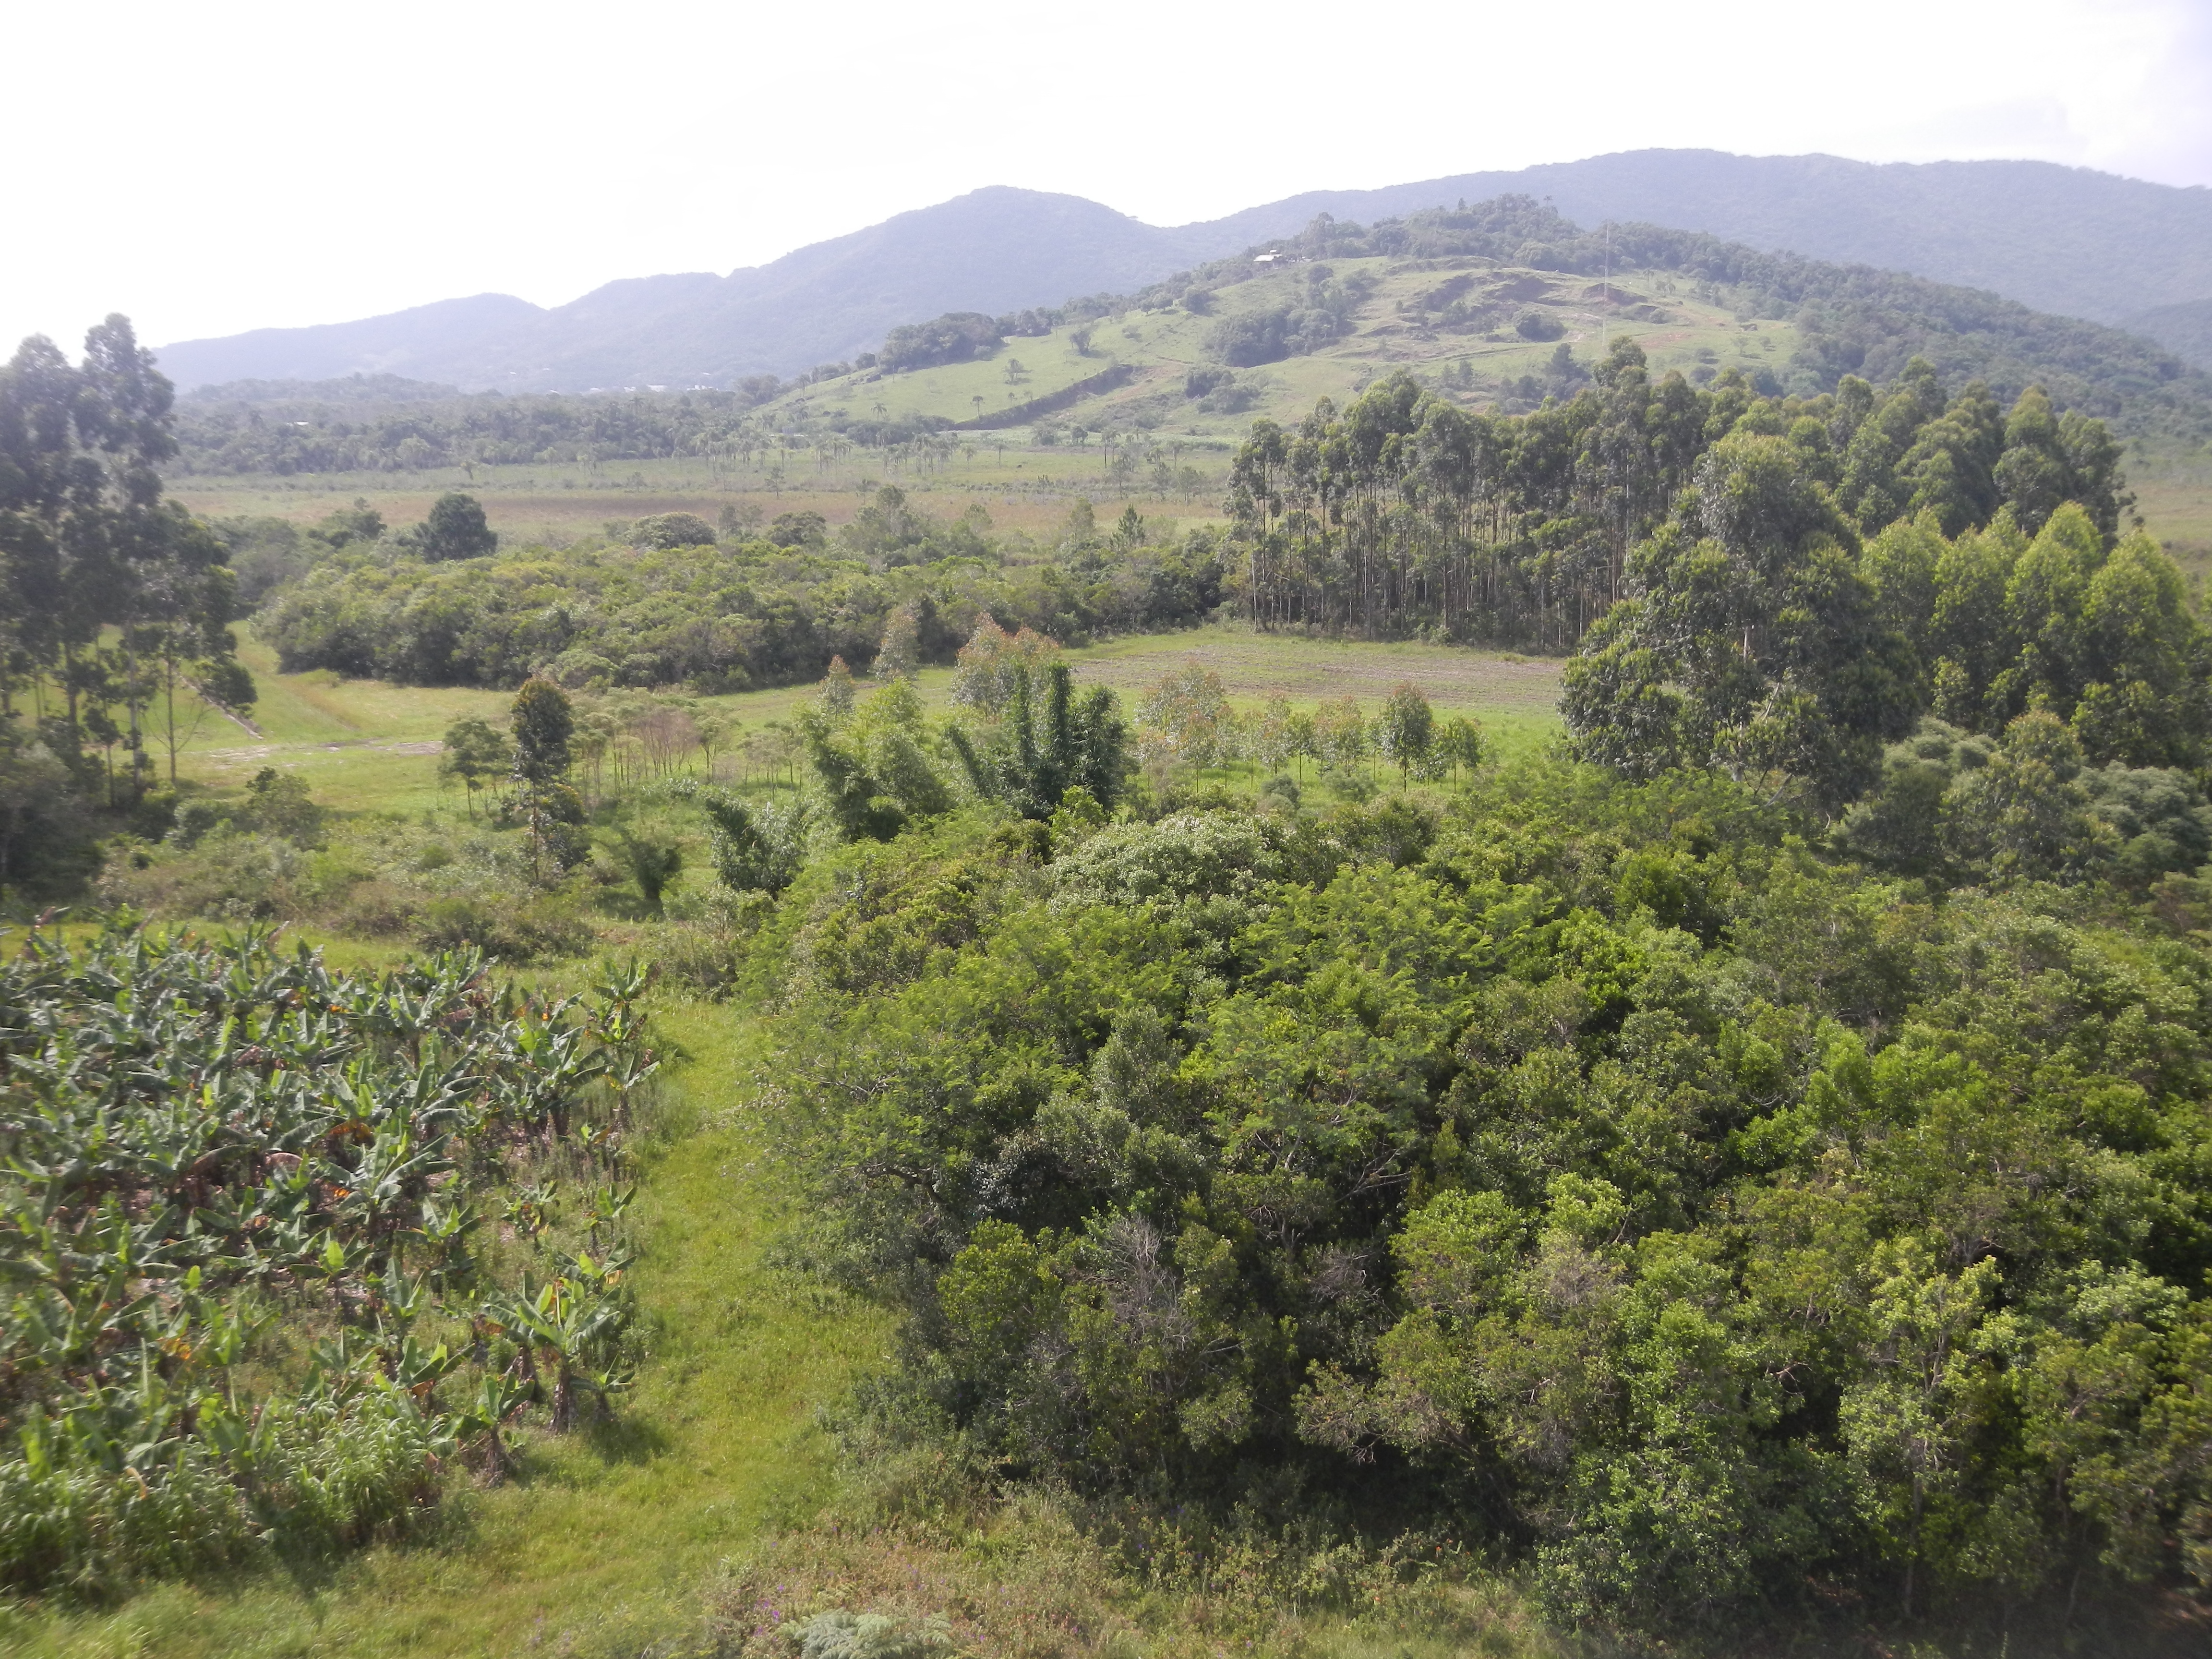 20151216 Fazenda Vista paisagem sudeste silvicultura agroecologi 002.jpg